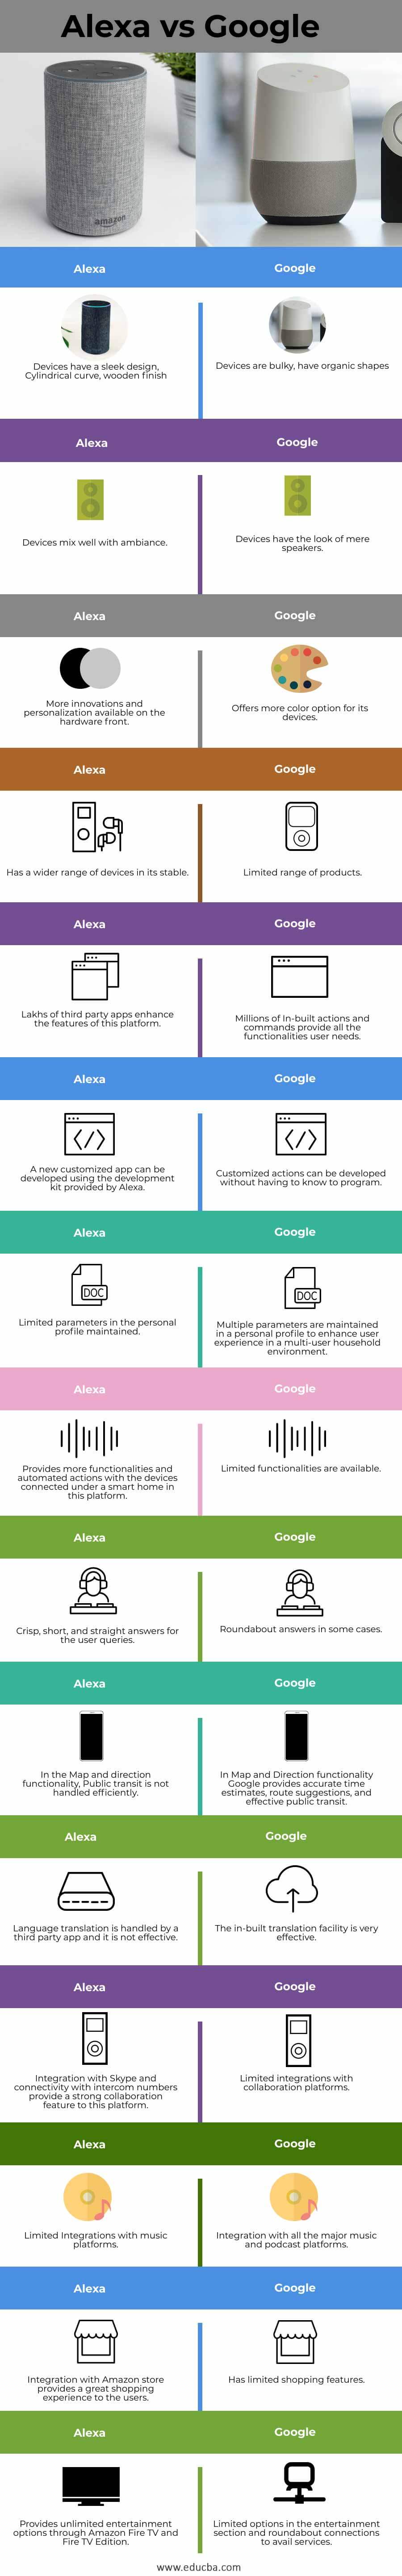 Alexa-vs-Google-info